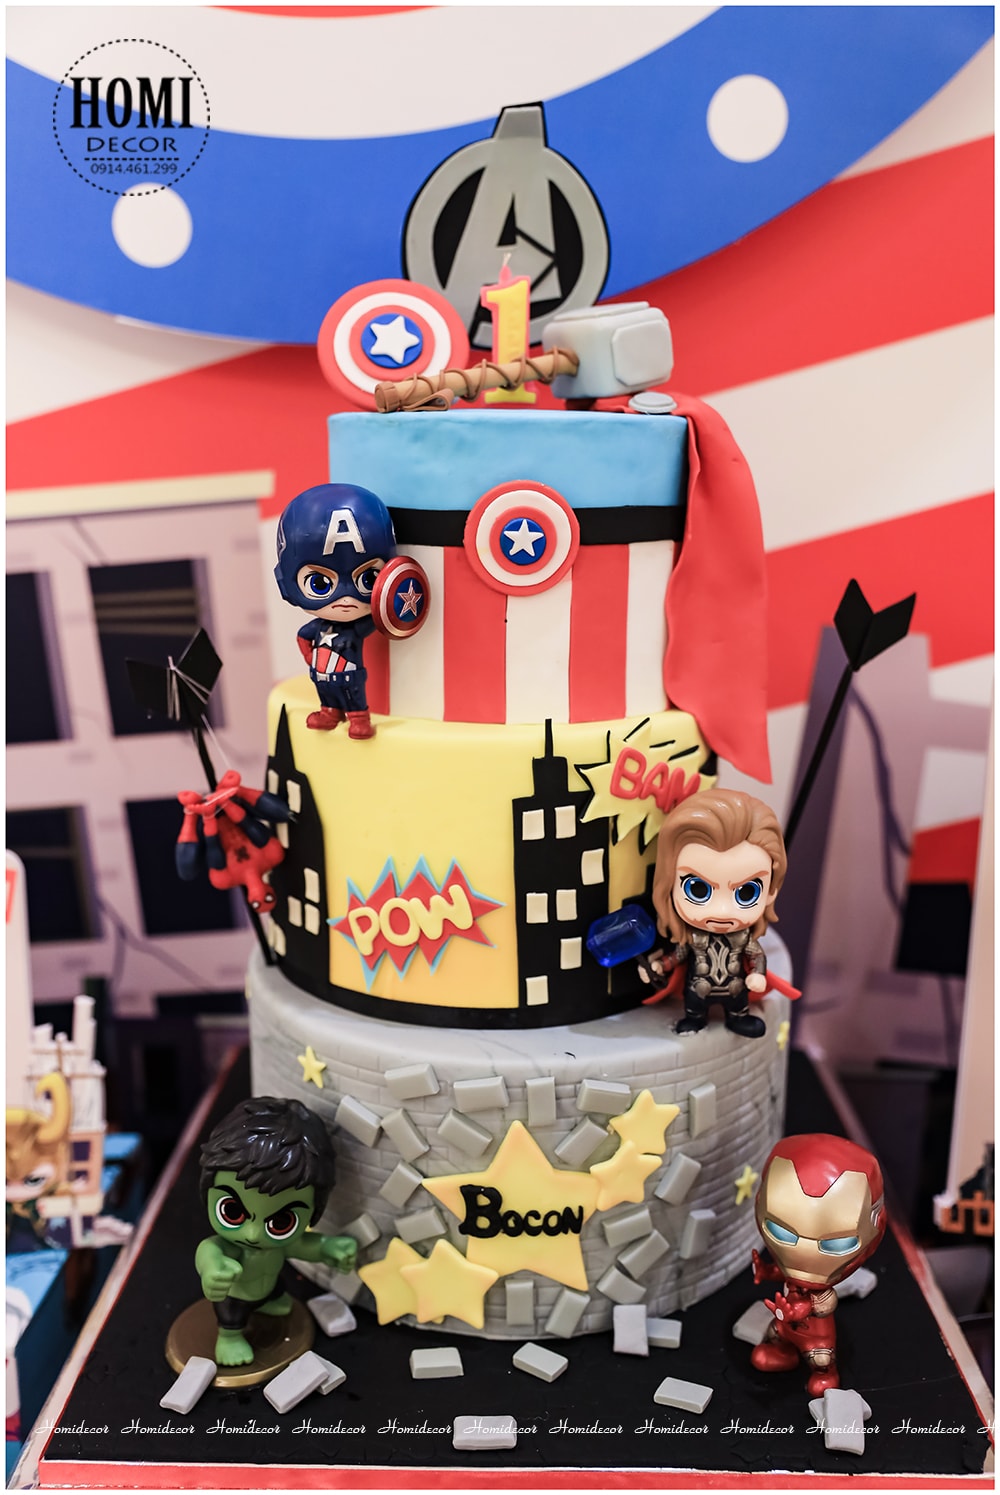 Trang trí sinh nhật cho bé chủ đề Avengers